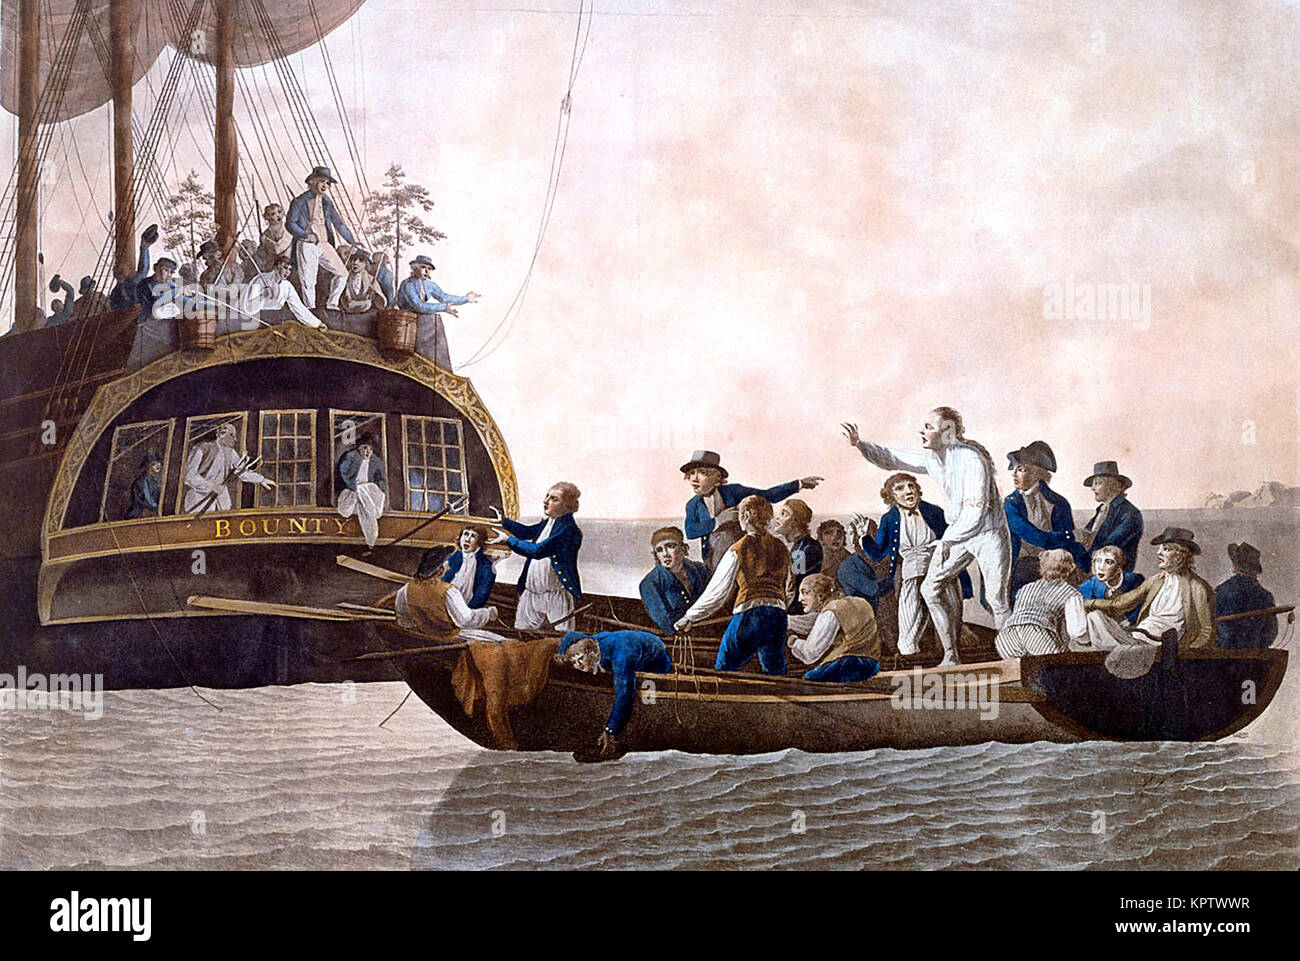 L'ammutinamento del Bounty, Fletcher Christian e rivoltosi girare il Tenente William Bligh e 18 altri alla deriva. Il Mutiny on the Royal Navy nave HMS Bounty si è verificato nel sud Pacifico il 28 aprile 1789. Foto Stock